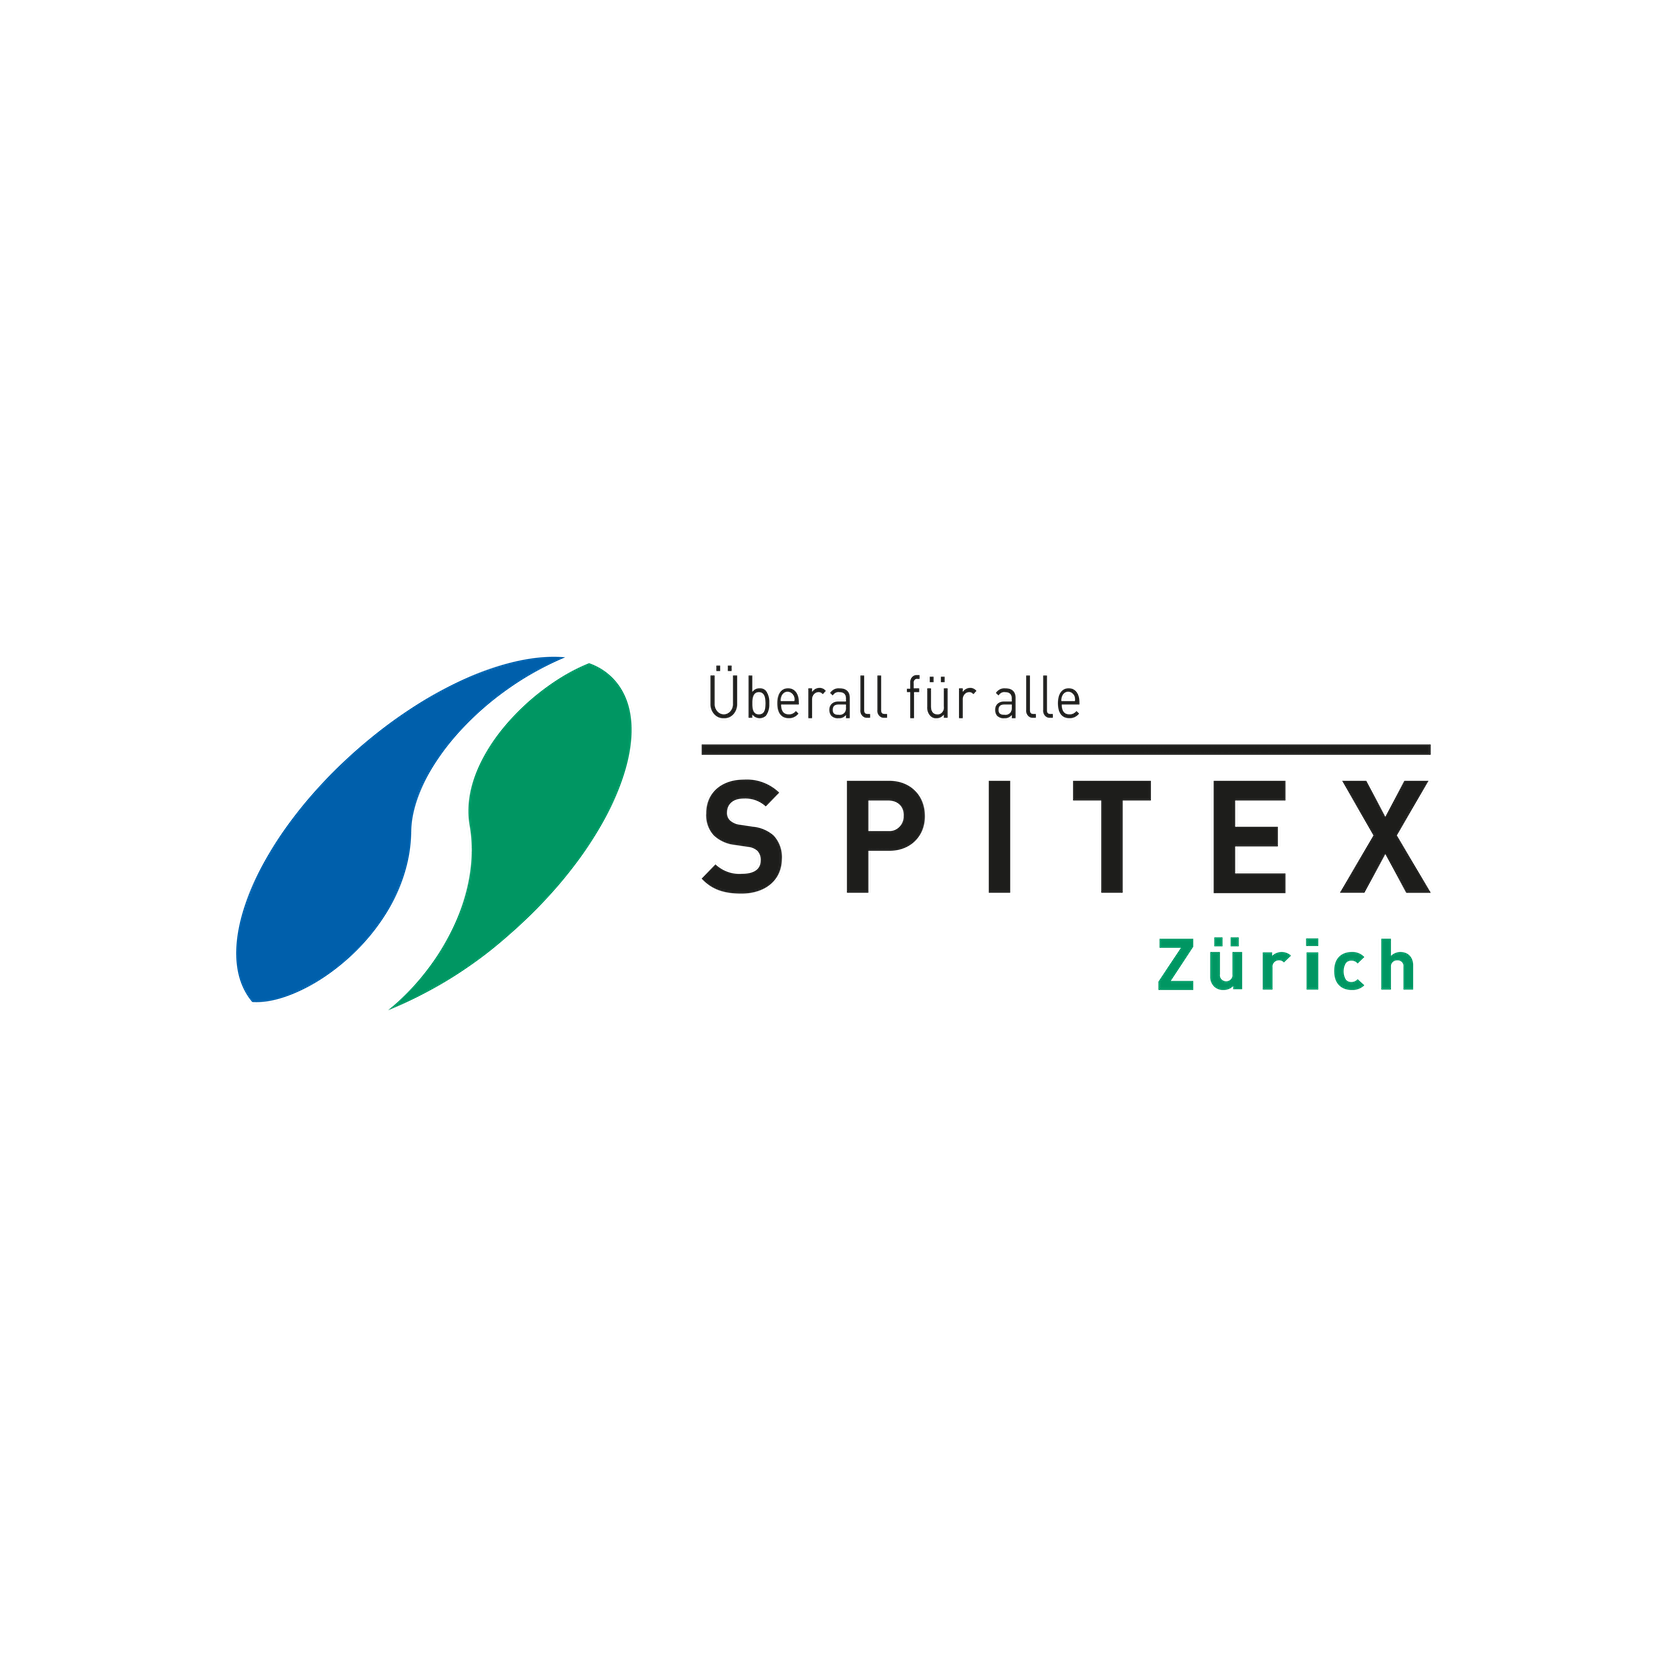 Spitex logo